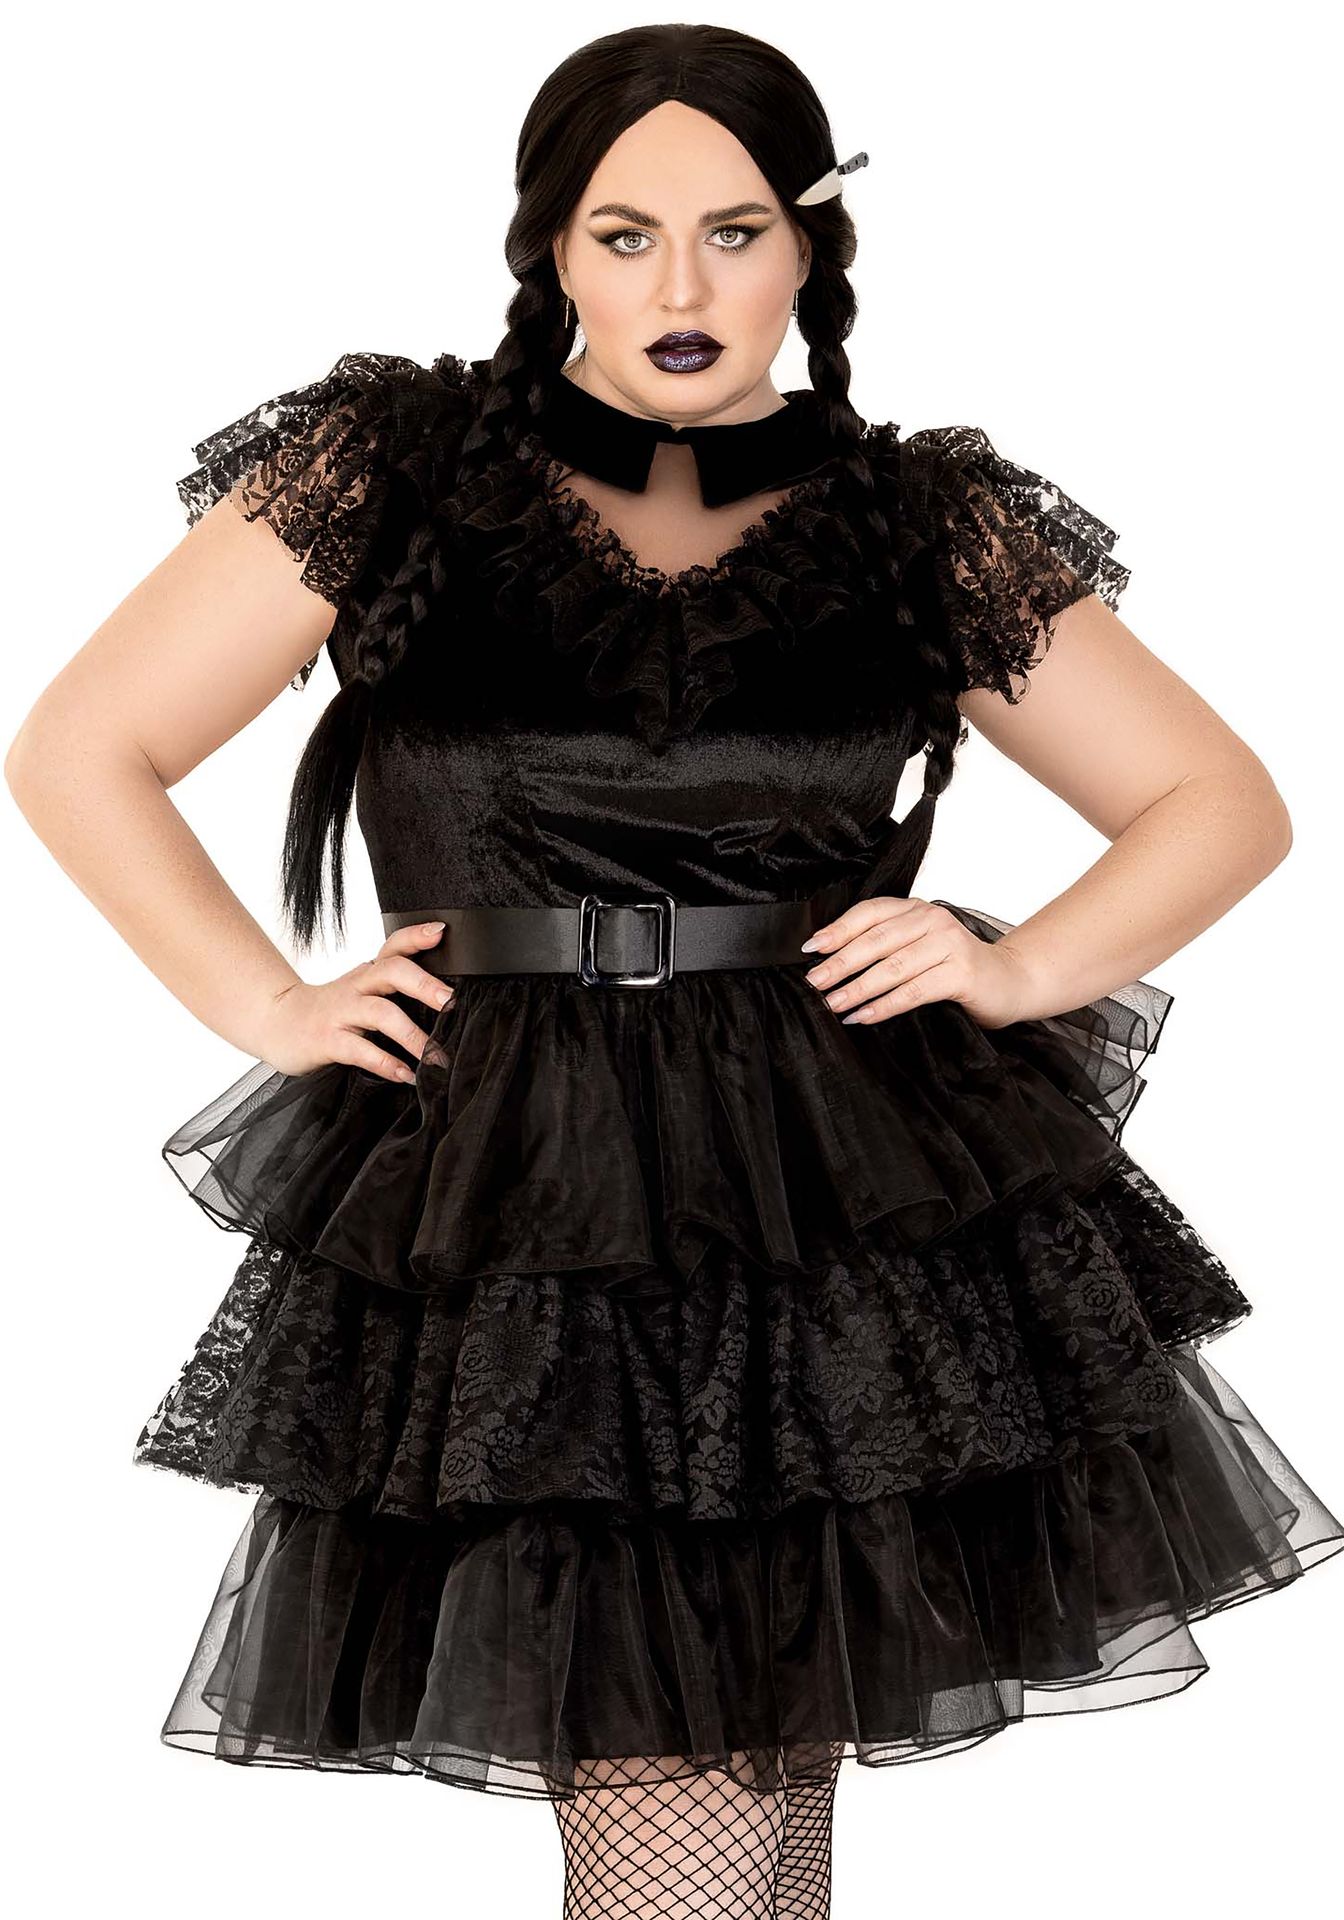 Raving rebel plus size jurk zwart